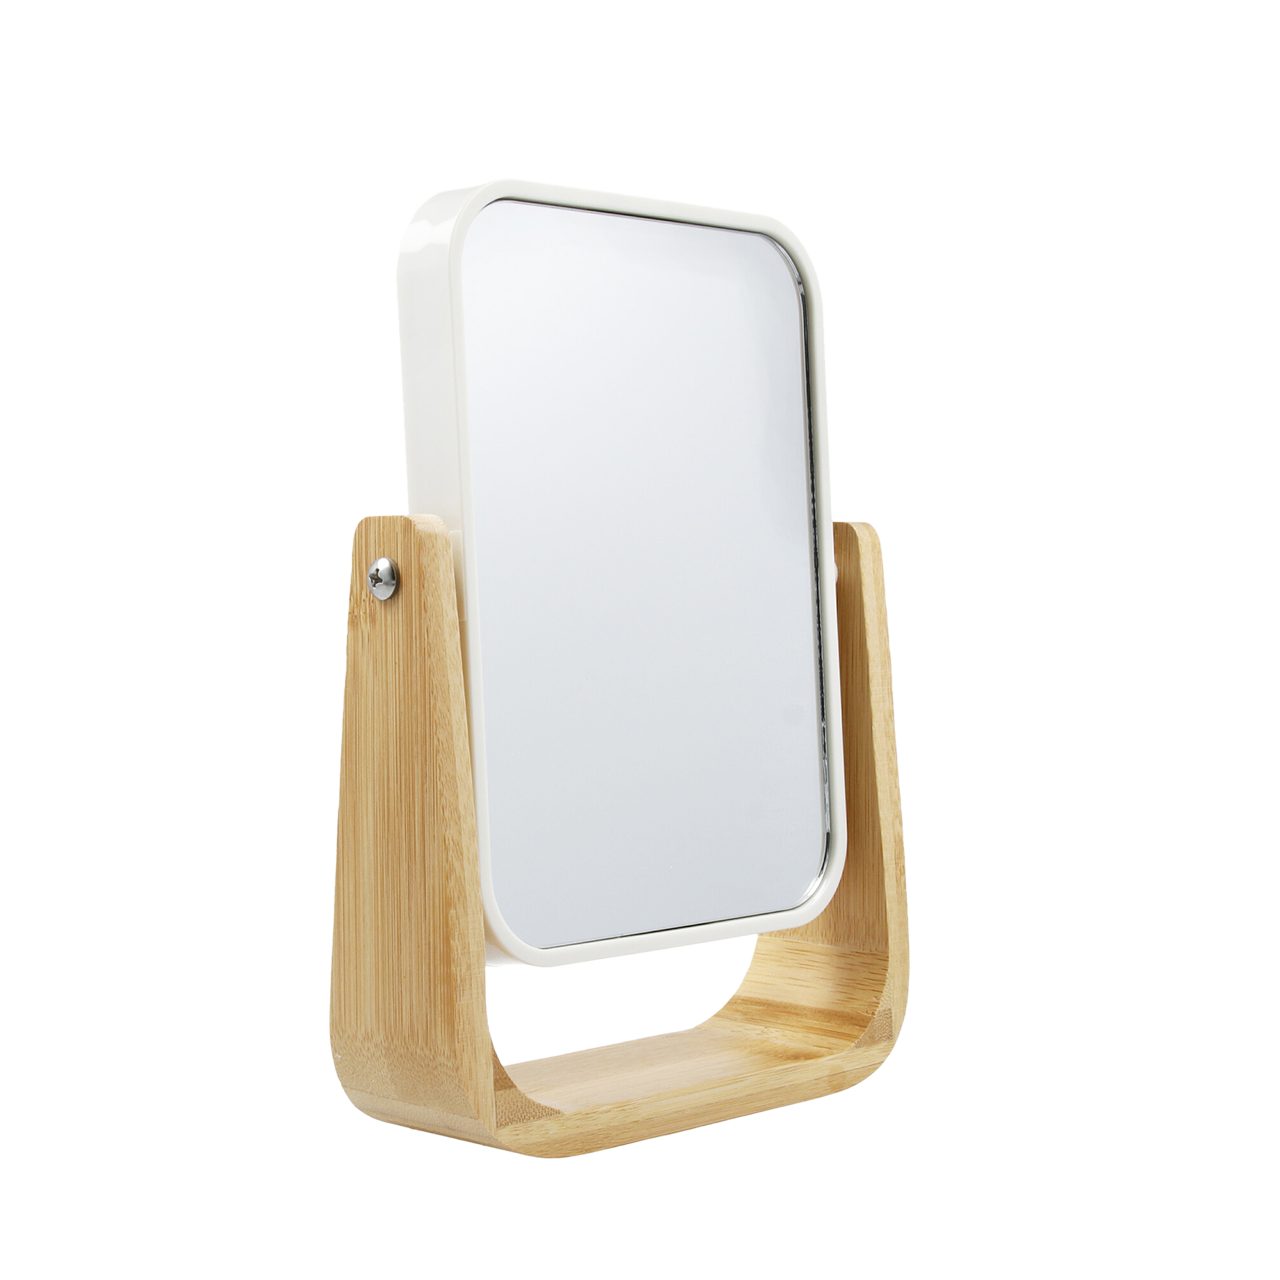 Vergrößerung Spiegel mit 5-fach Beauty Bambusspiegel PARSA